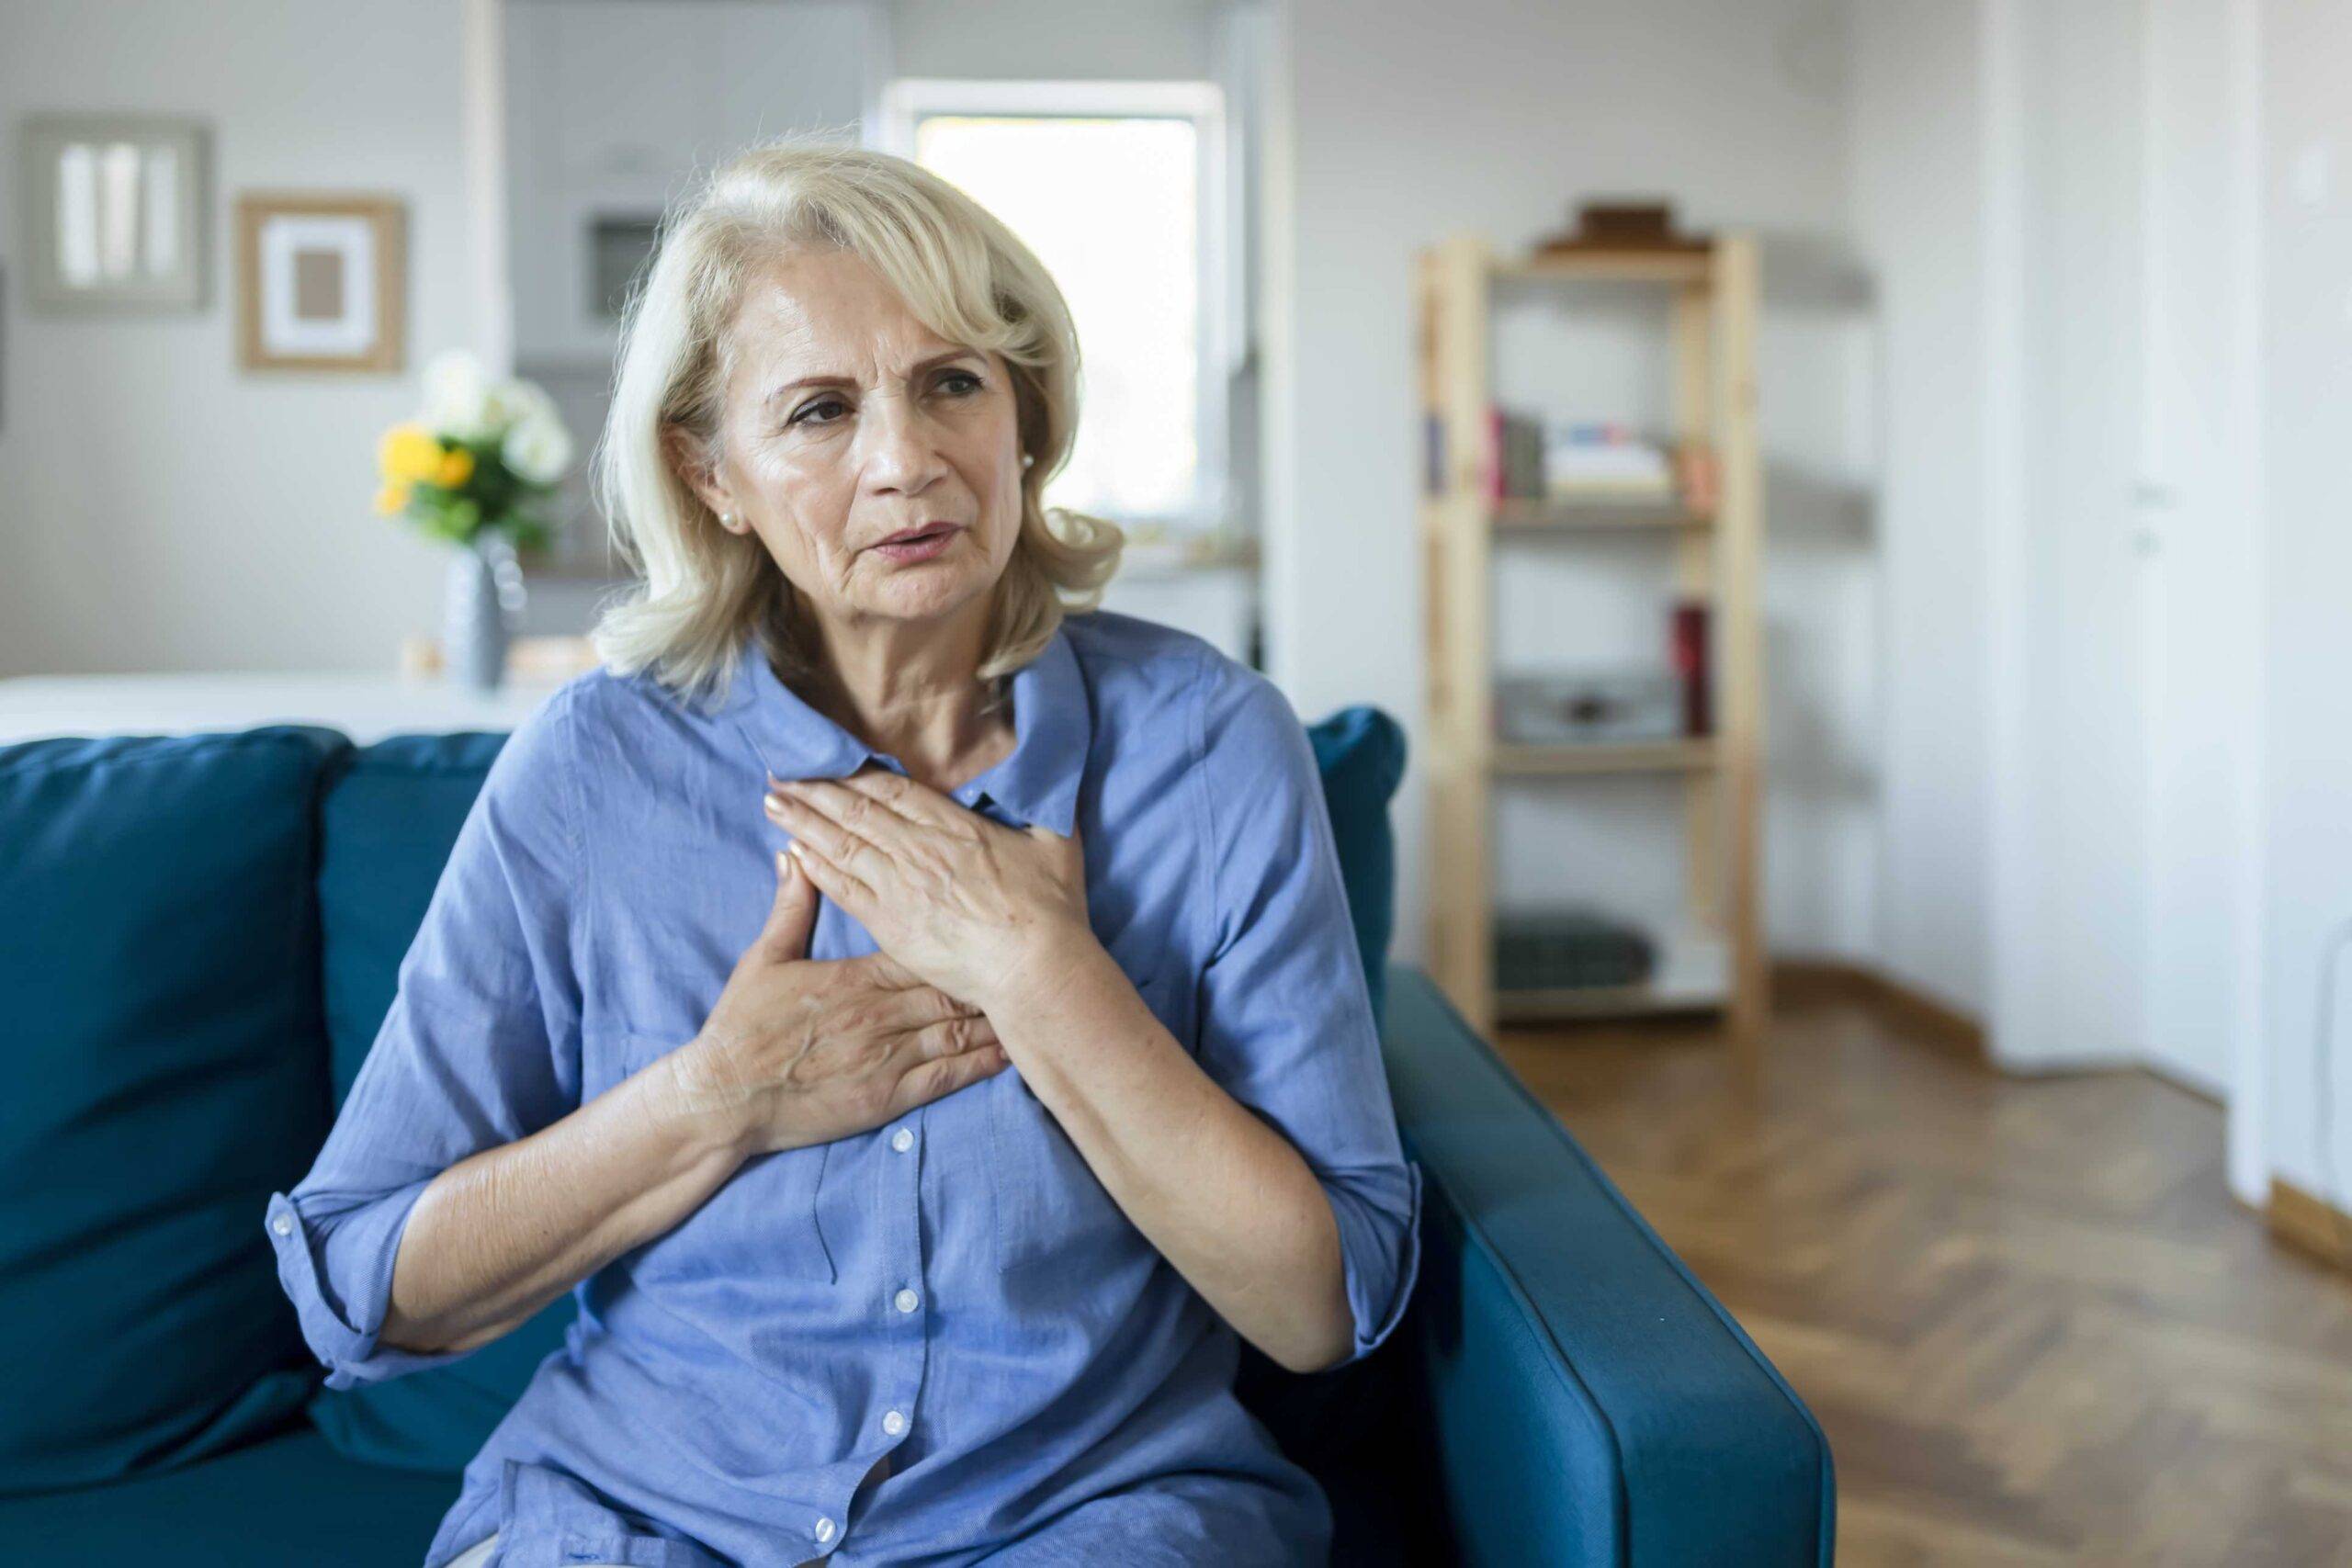 Paciente idosa com fibrilação atrial sente palpitações irregulares do coração e leva mãos ao peito